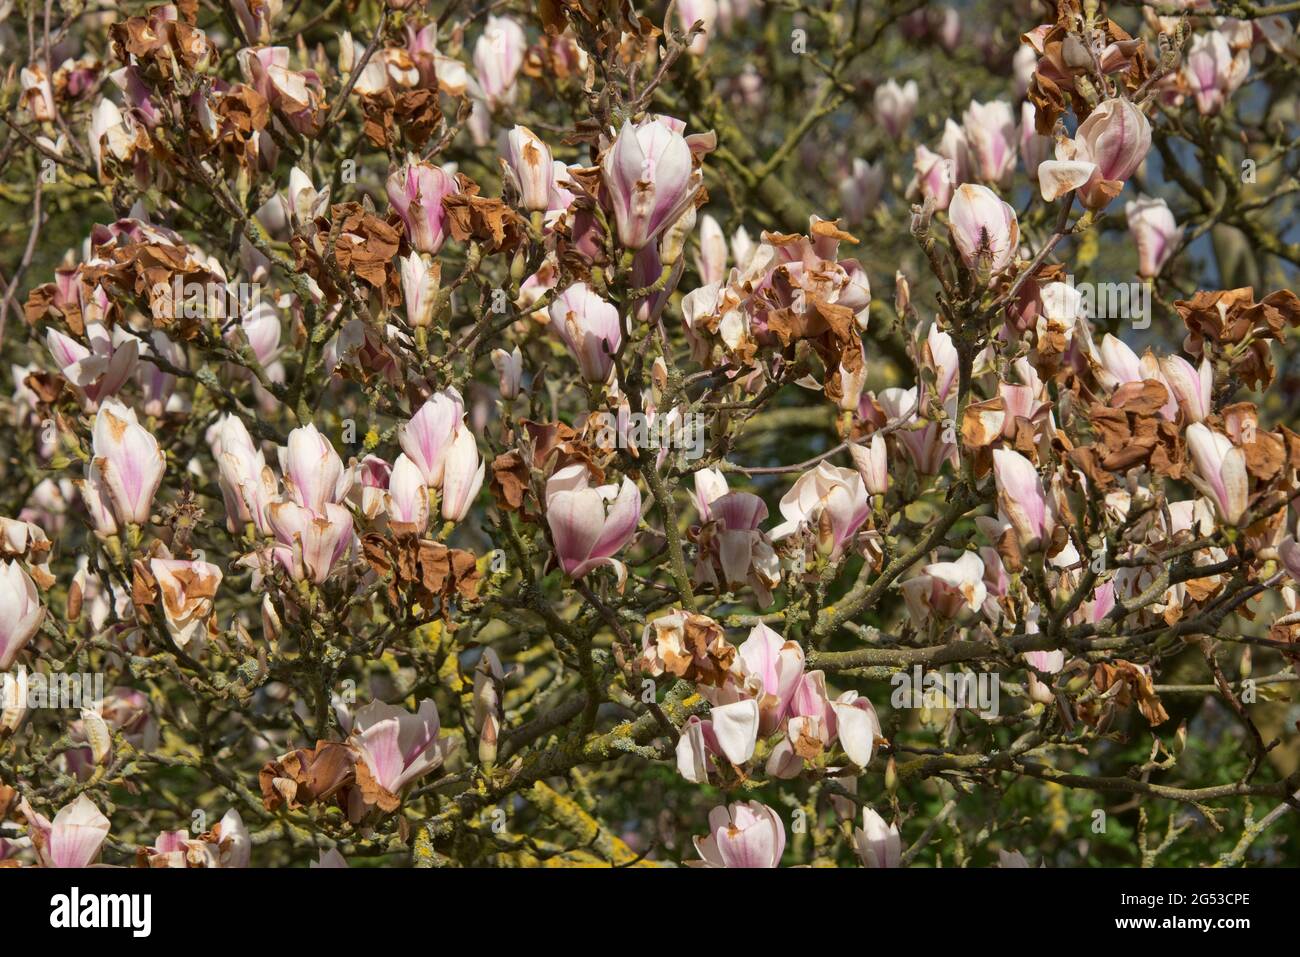 Schwere Kälteschäden, Verbrennungen an chinesischen oder untertassen Magnolien (Magnolia x soulangeana) Blüten nach einem späten Frost, in der Stadt, im April Stockfoto